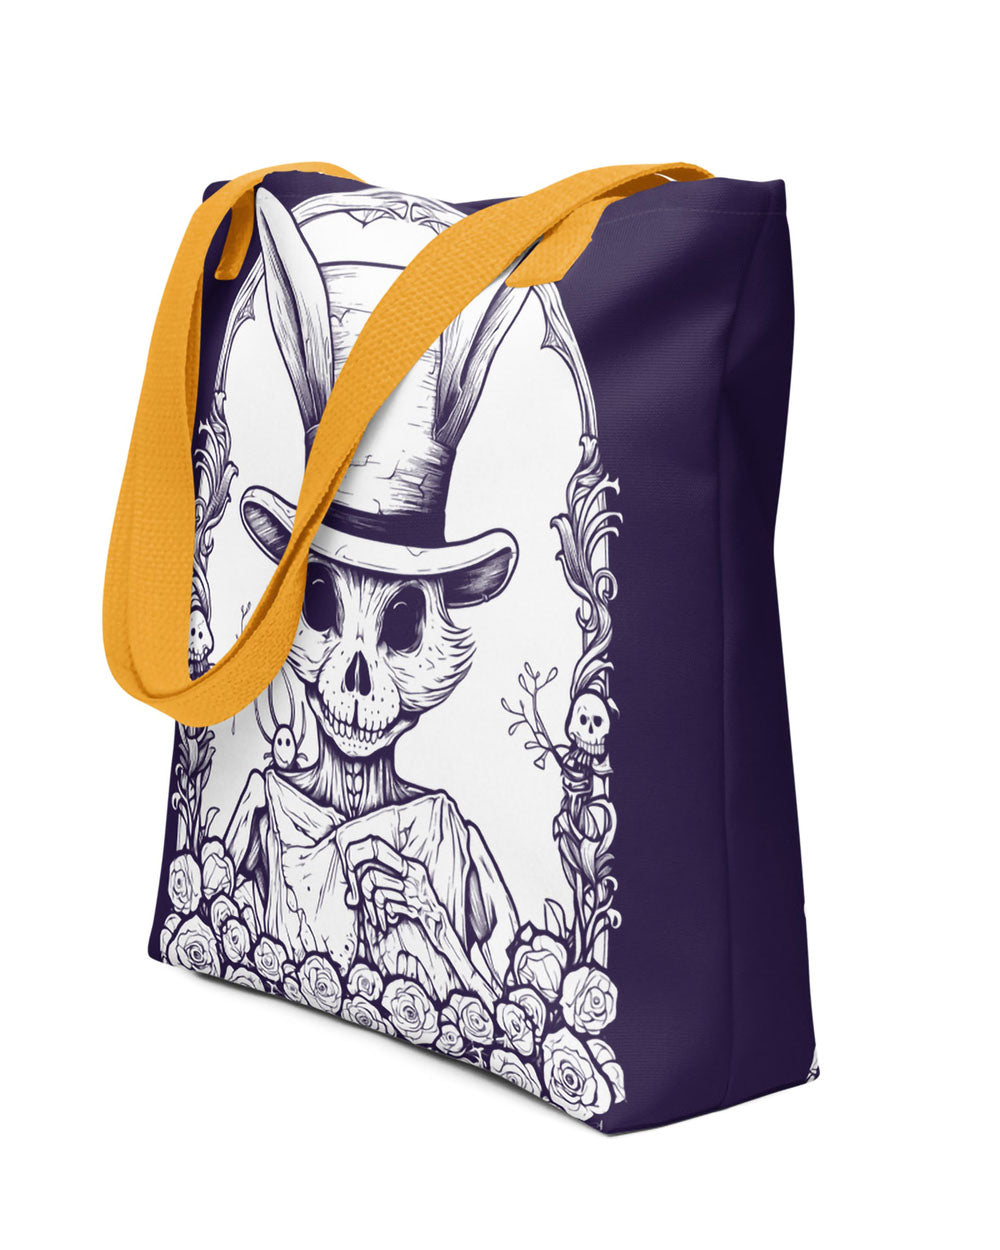 Alice in Wonderland Rabbit Tote Bag Black Rabbit Tote Bag Rabbit